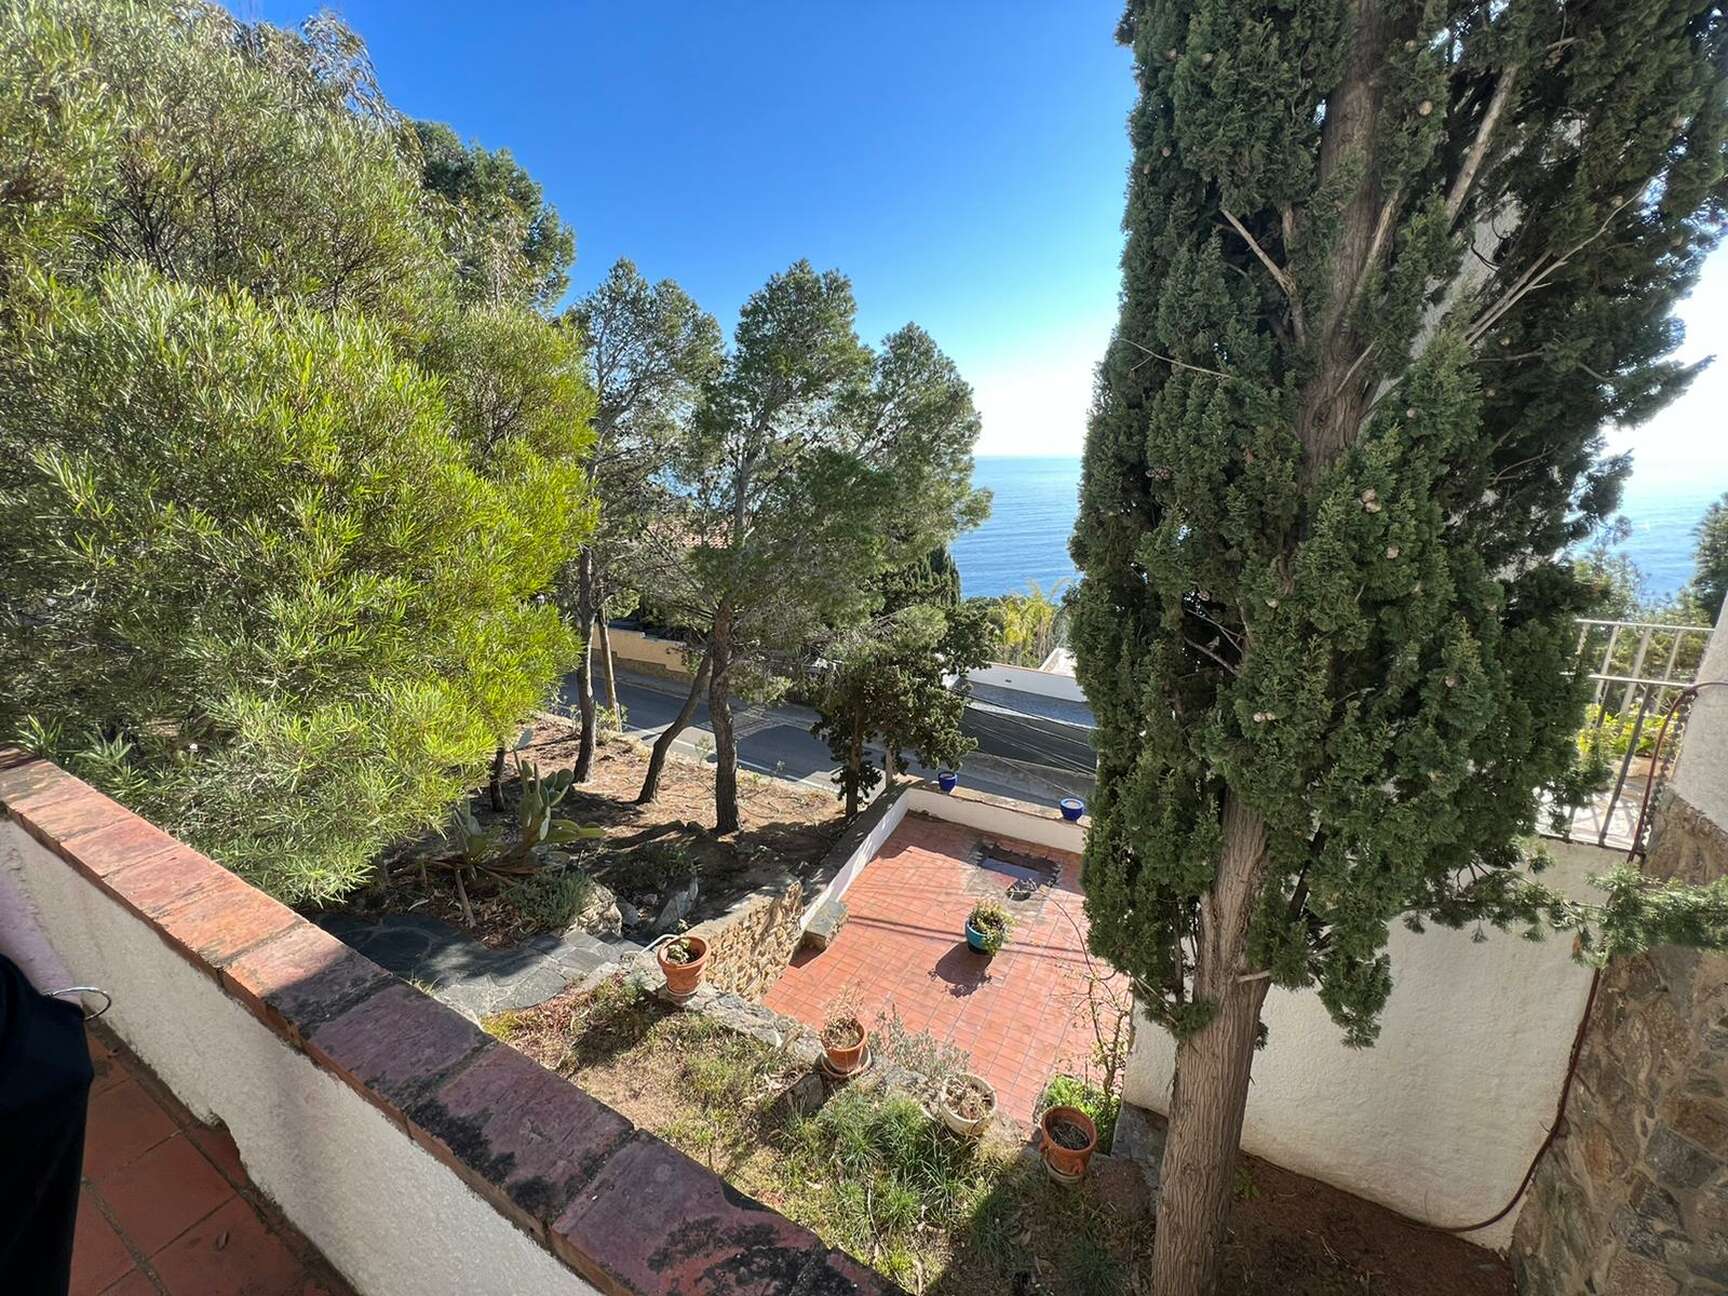 Maison de style méditerranéen avec vue sur la mer à vendre Almadrava